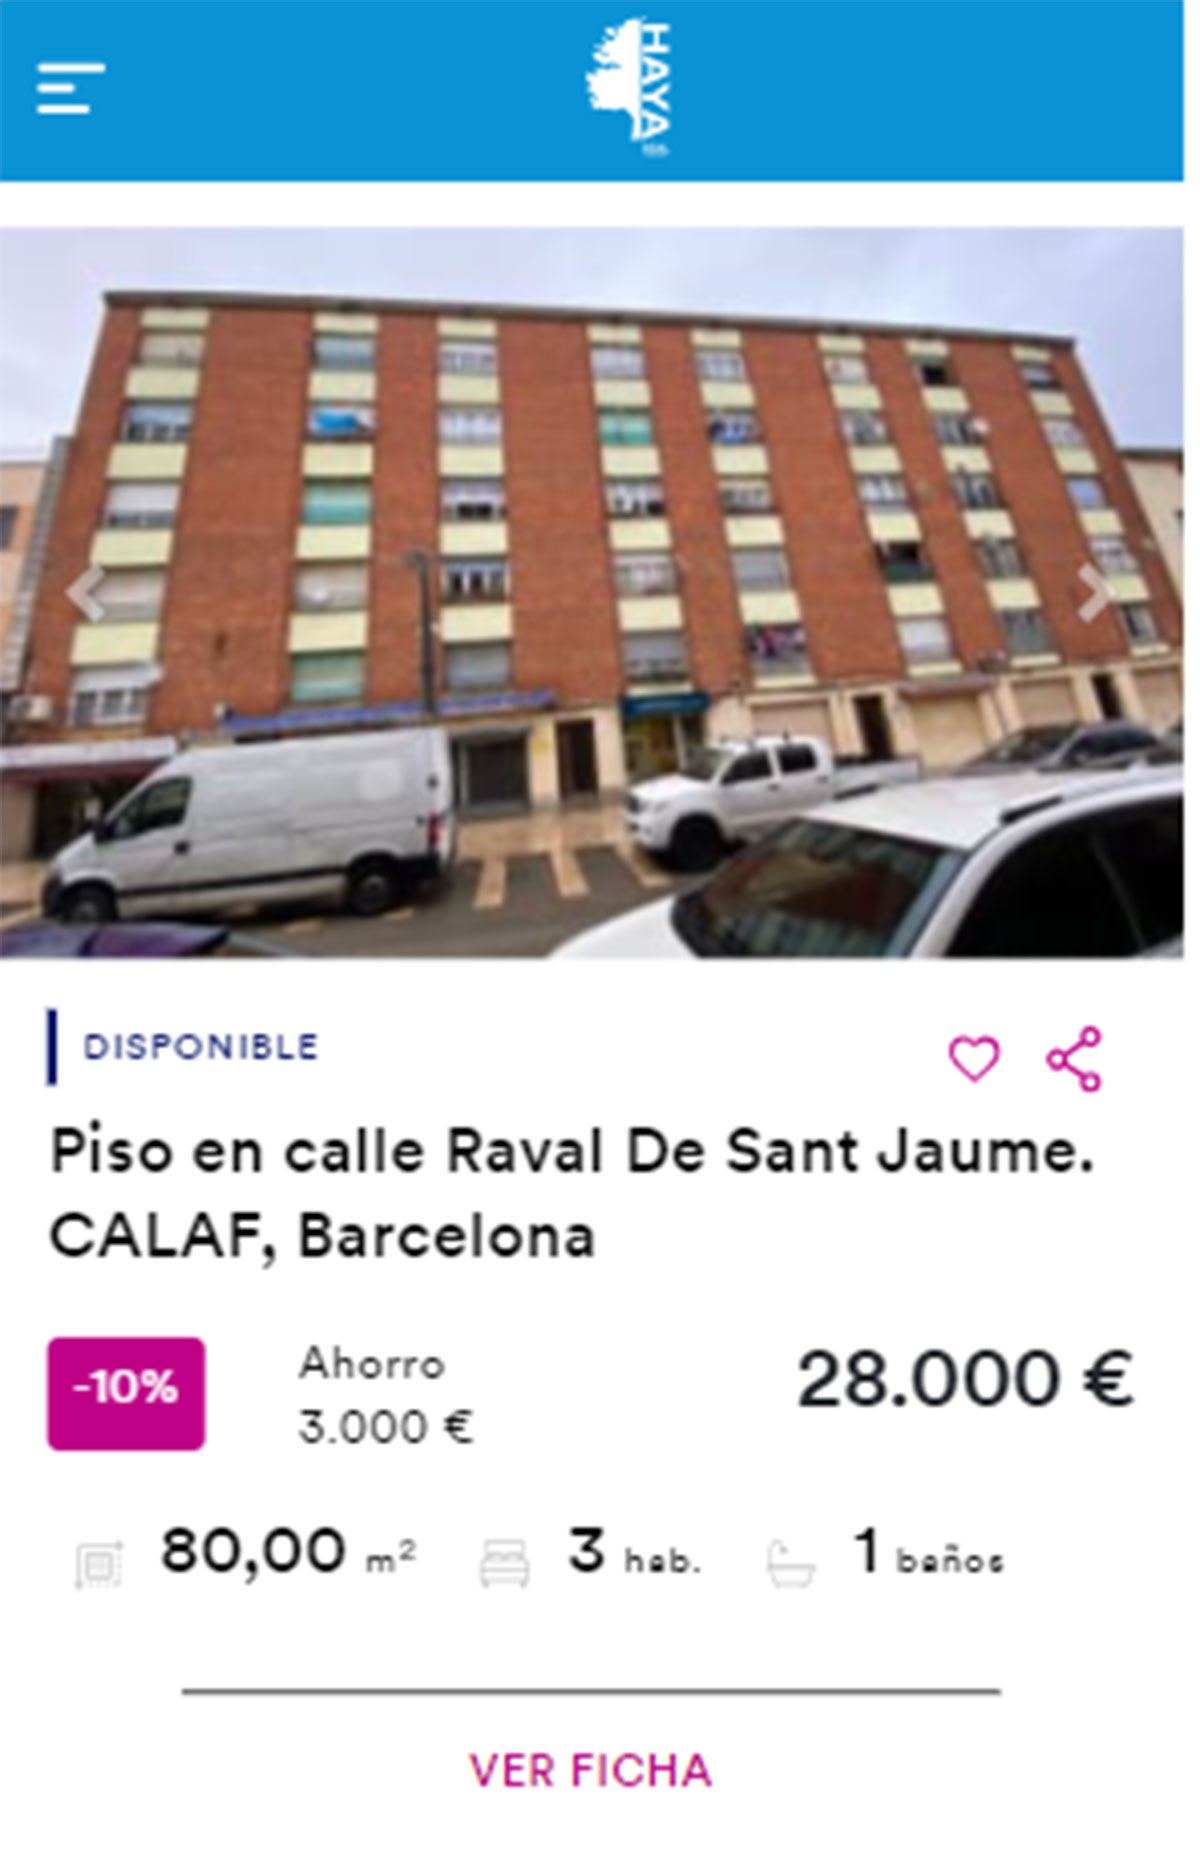 Piso en Barcelona por 28.000 euros